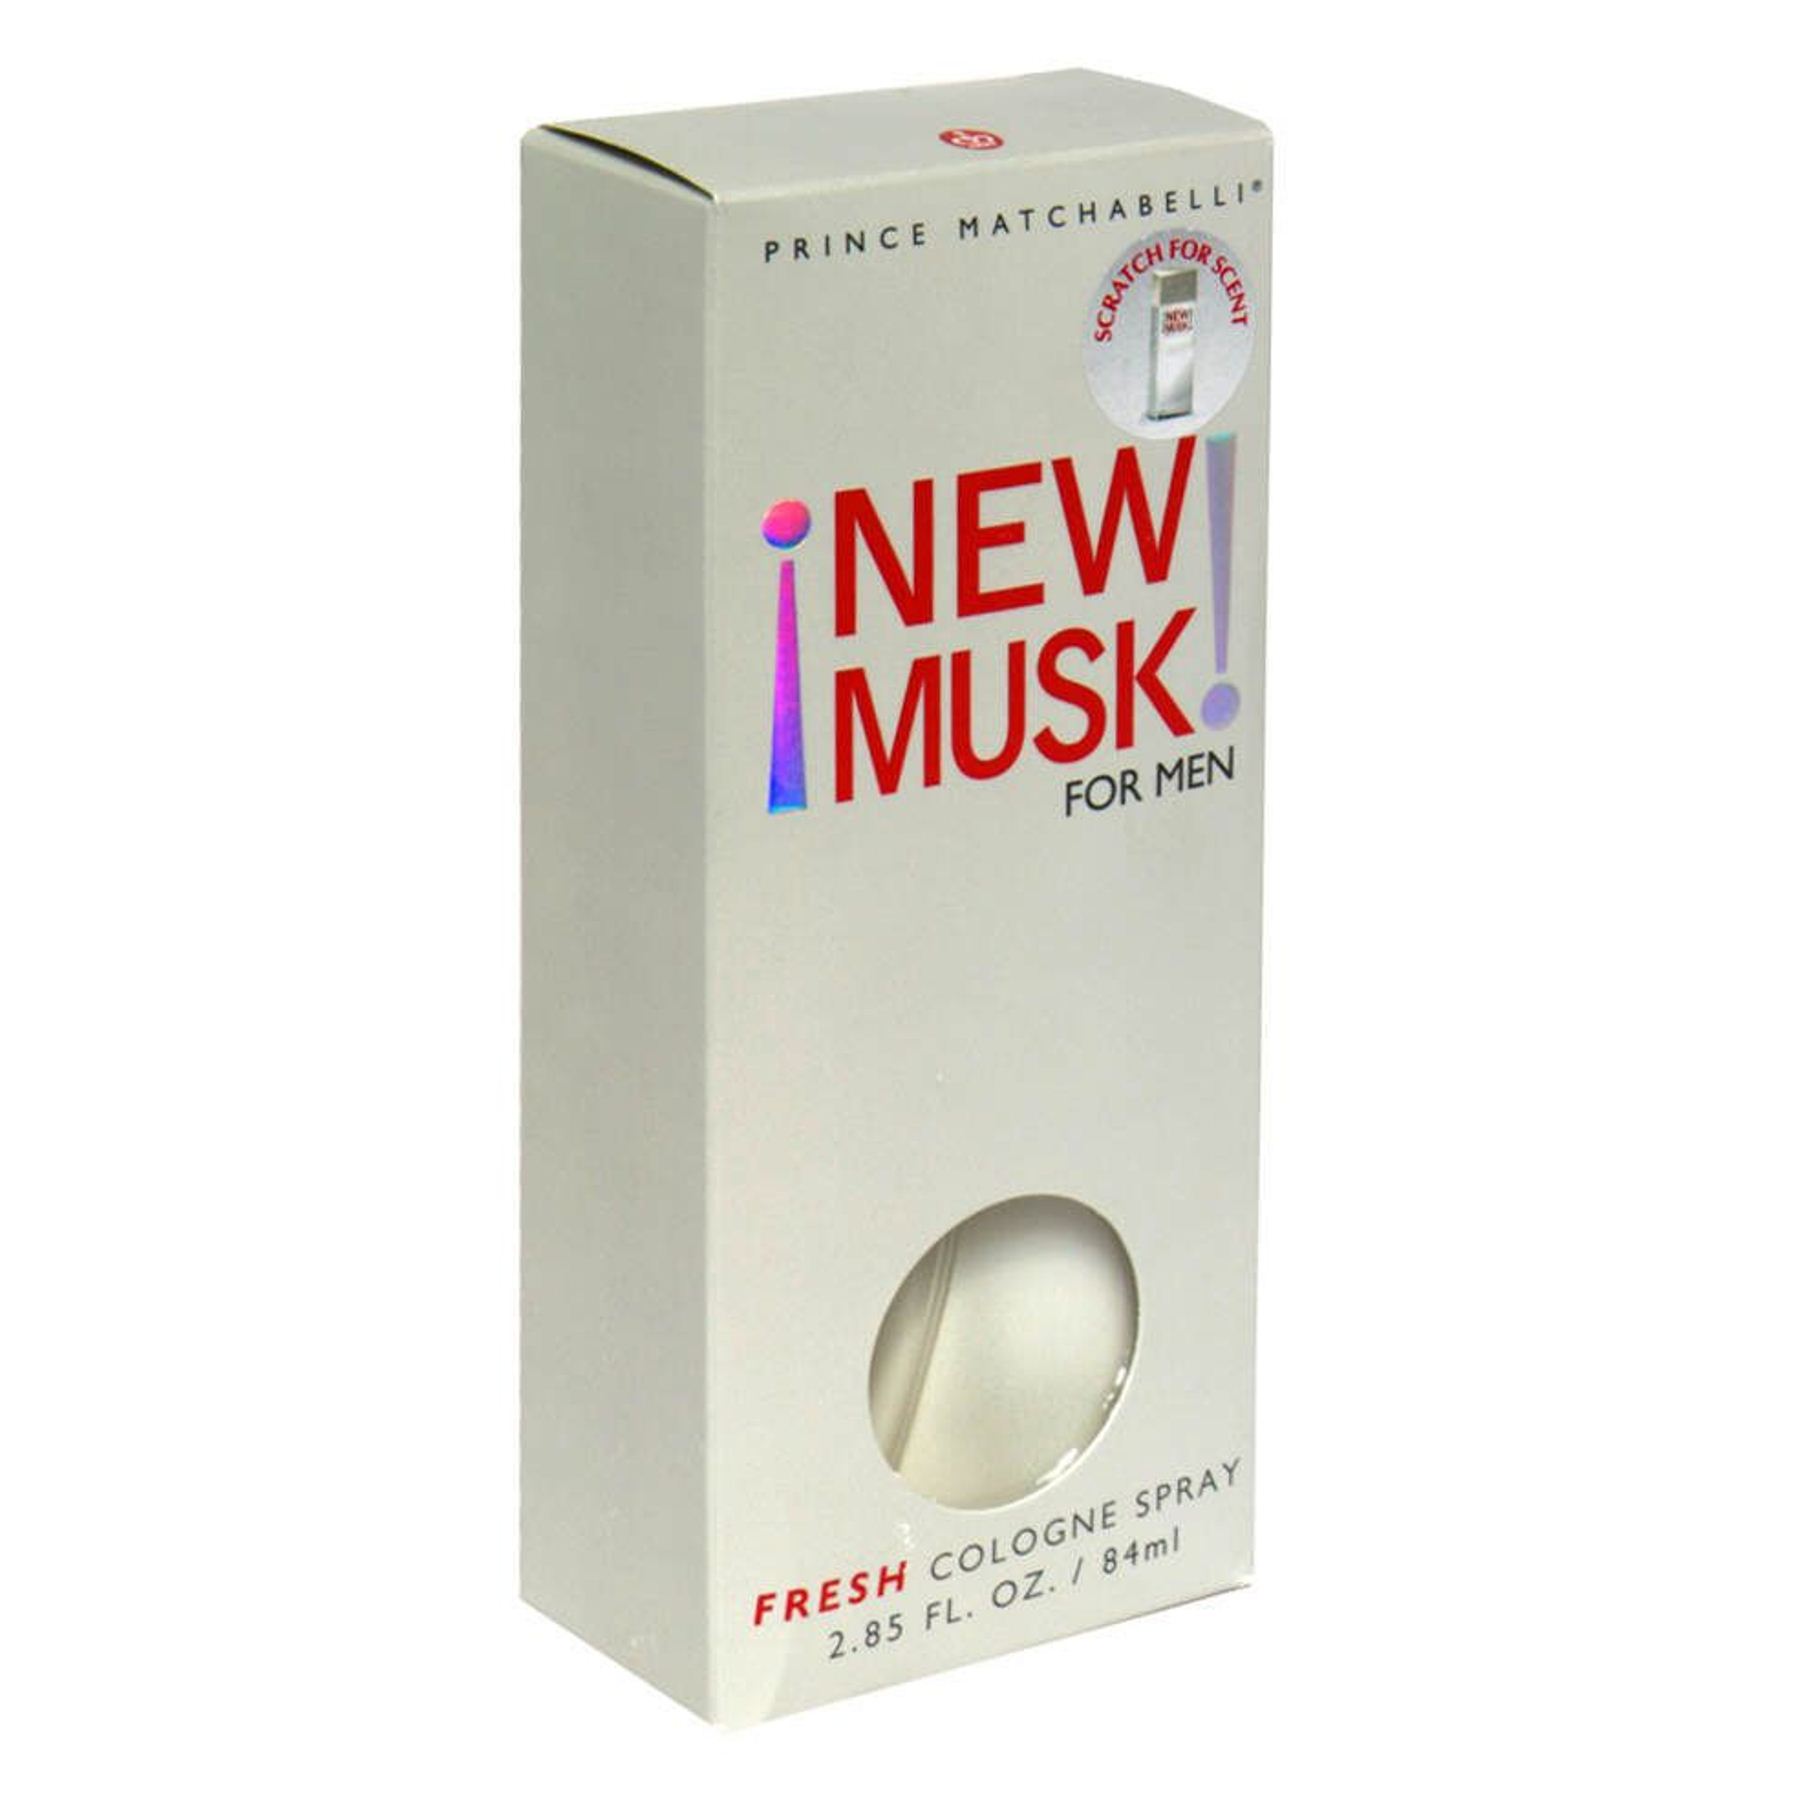 New Musk Fresh Cologne Spray for Men, 2.85 fl oz